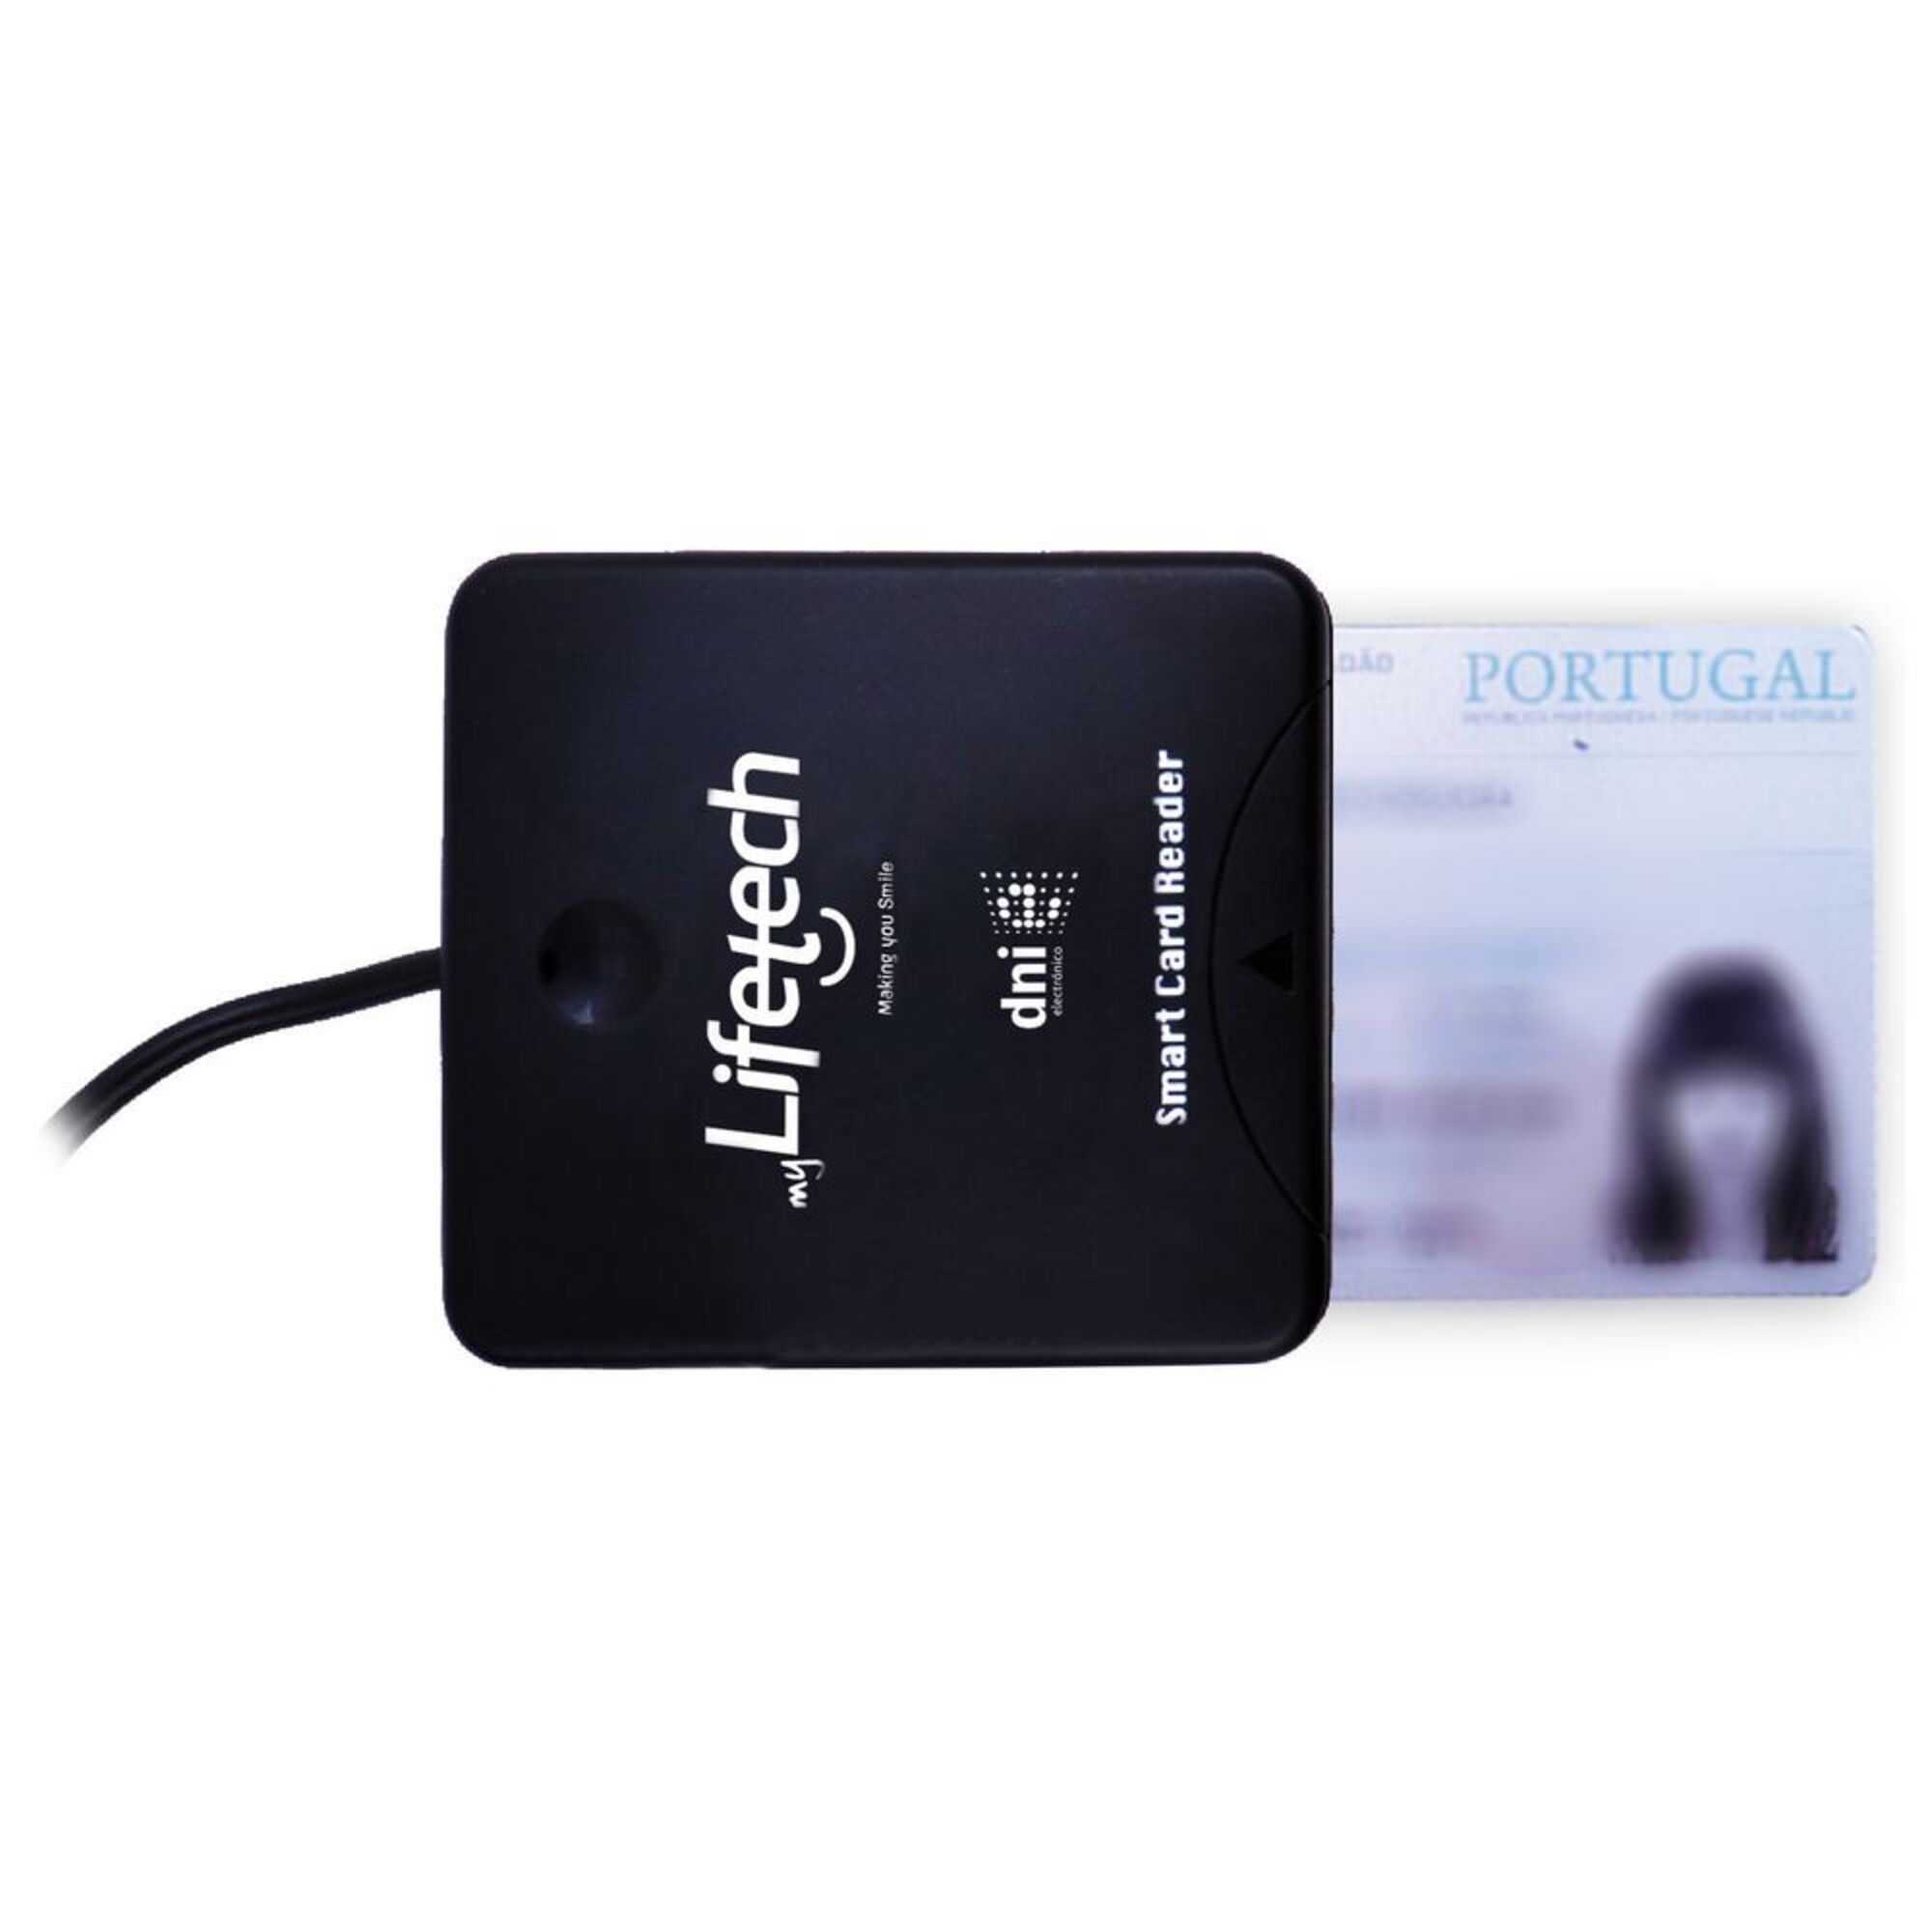 LIFETECH Leitor de Cartões Cidadão  LFCRD007, USB 2.0